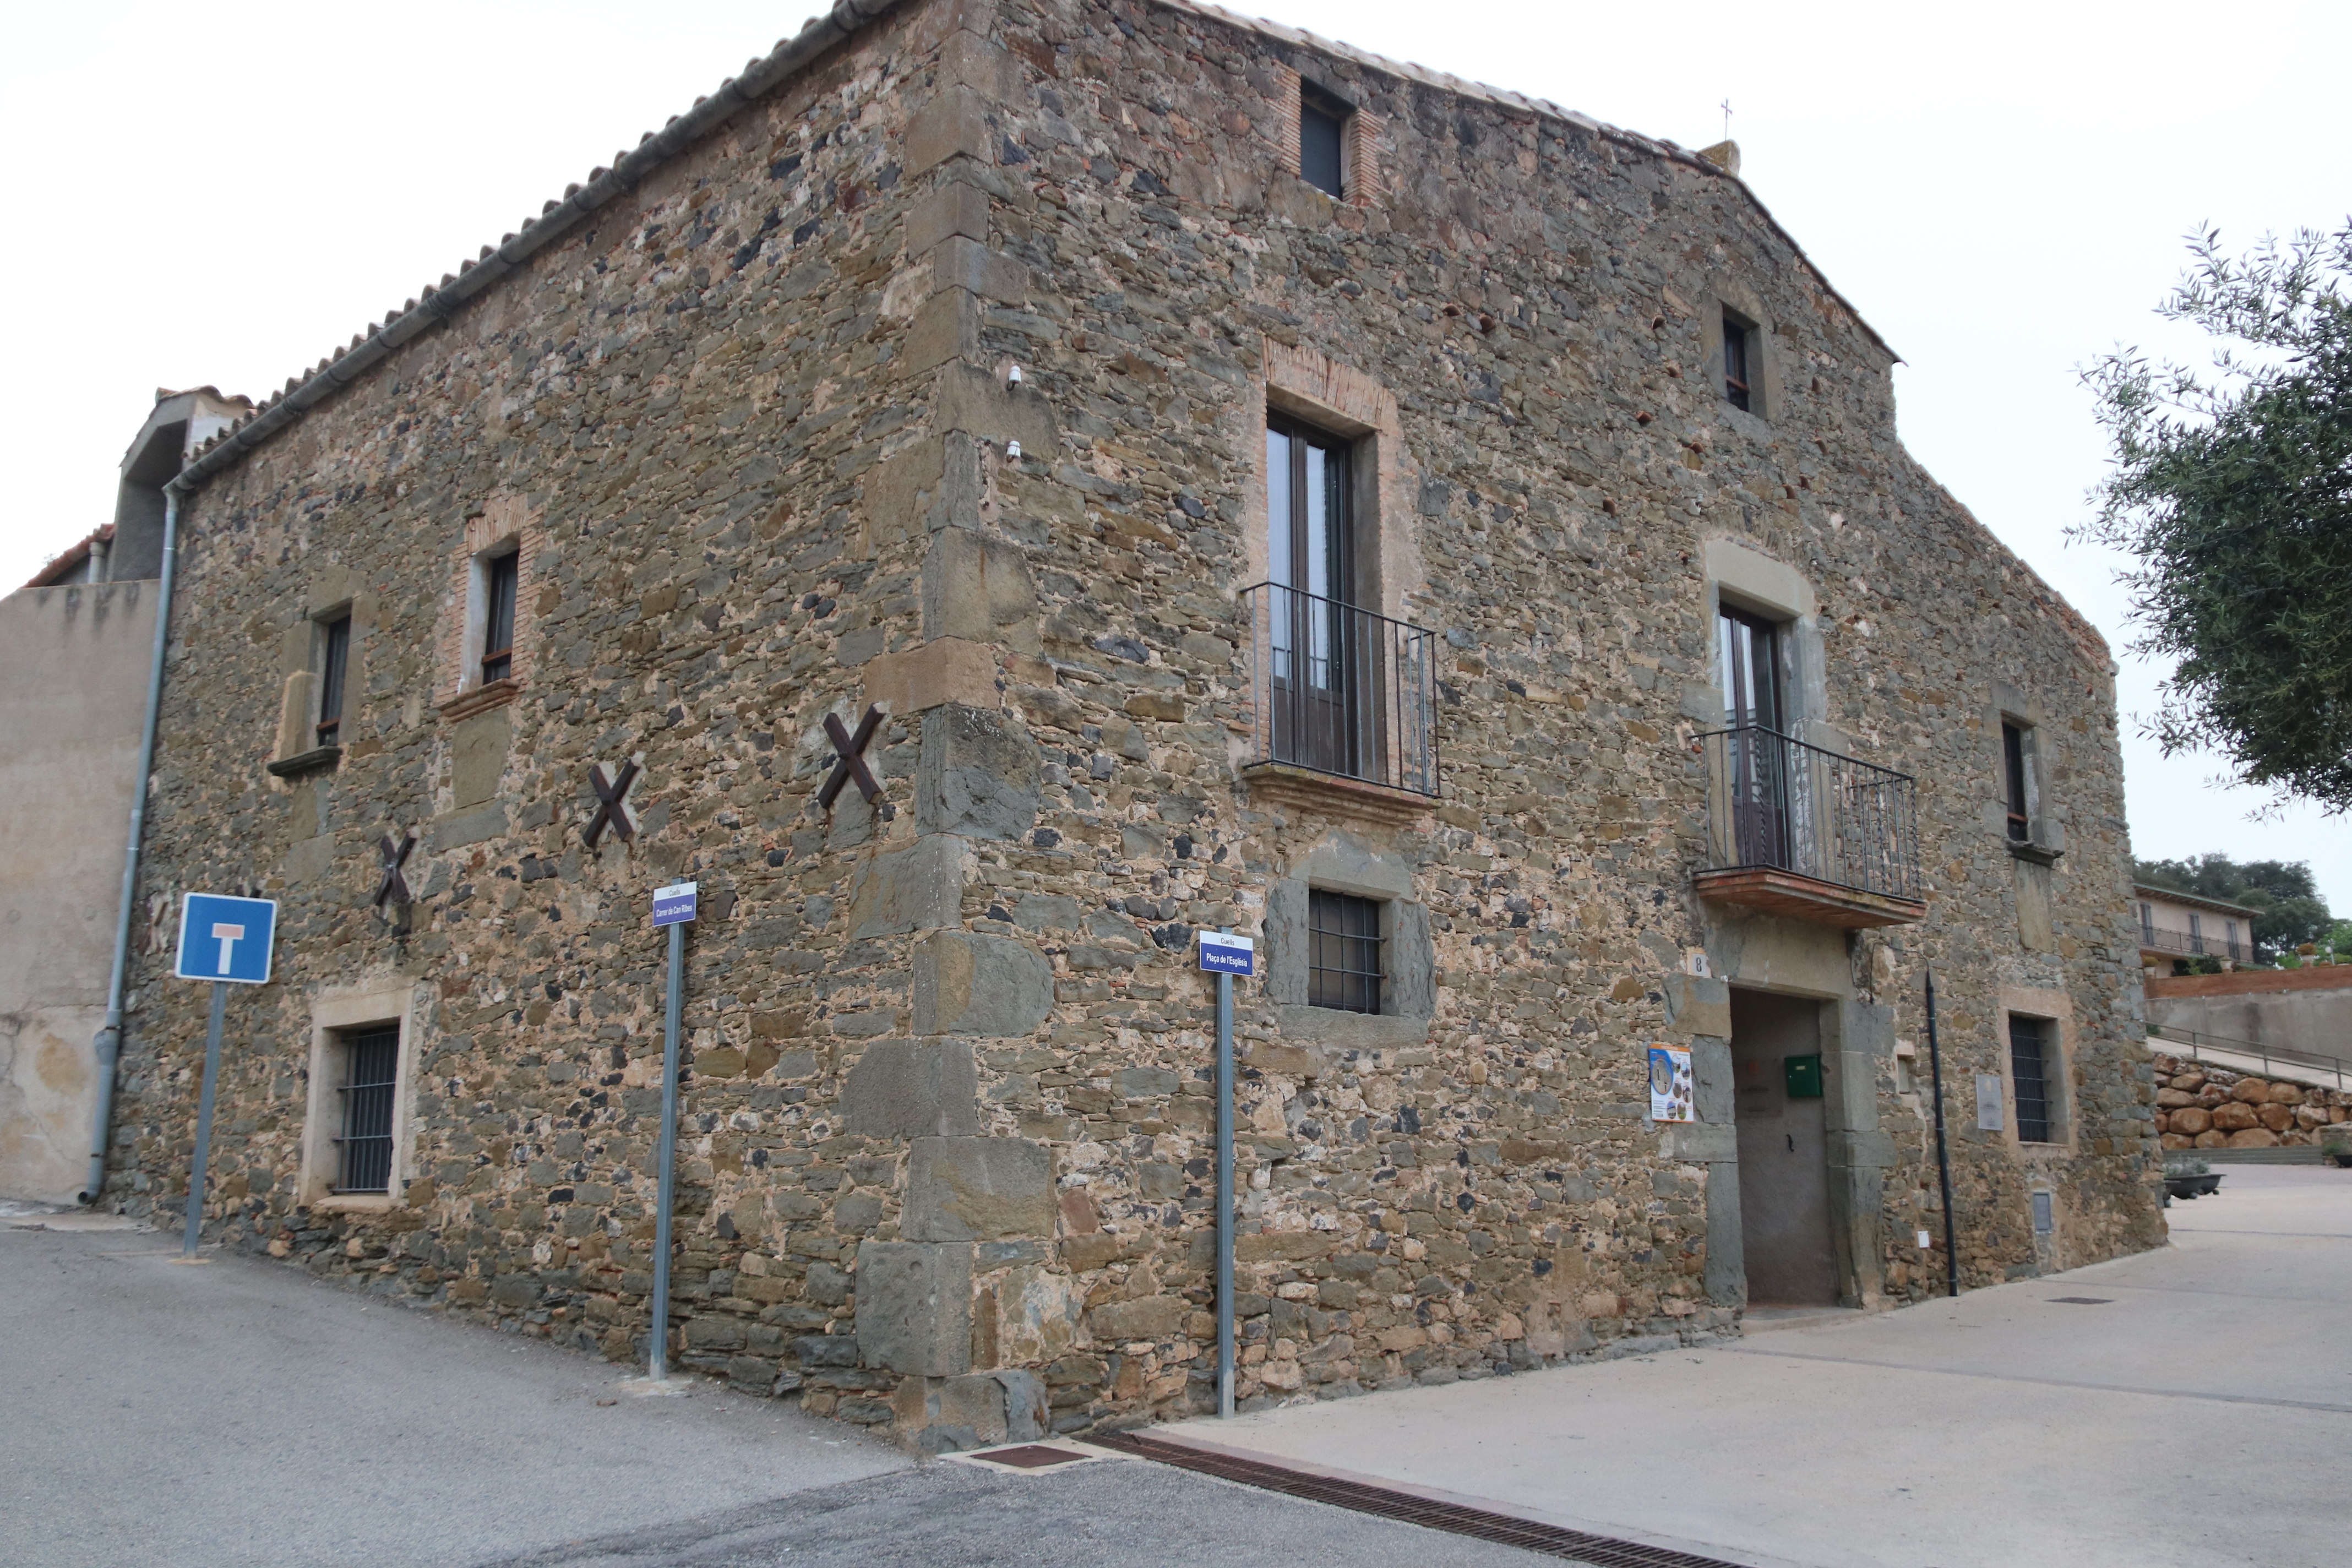 L'Ajuntament de Foixà i els veïns rebutgen que el Govern destini una casa de colònies a acollir menors no acompanyats